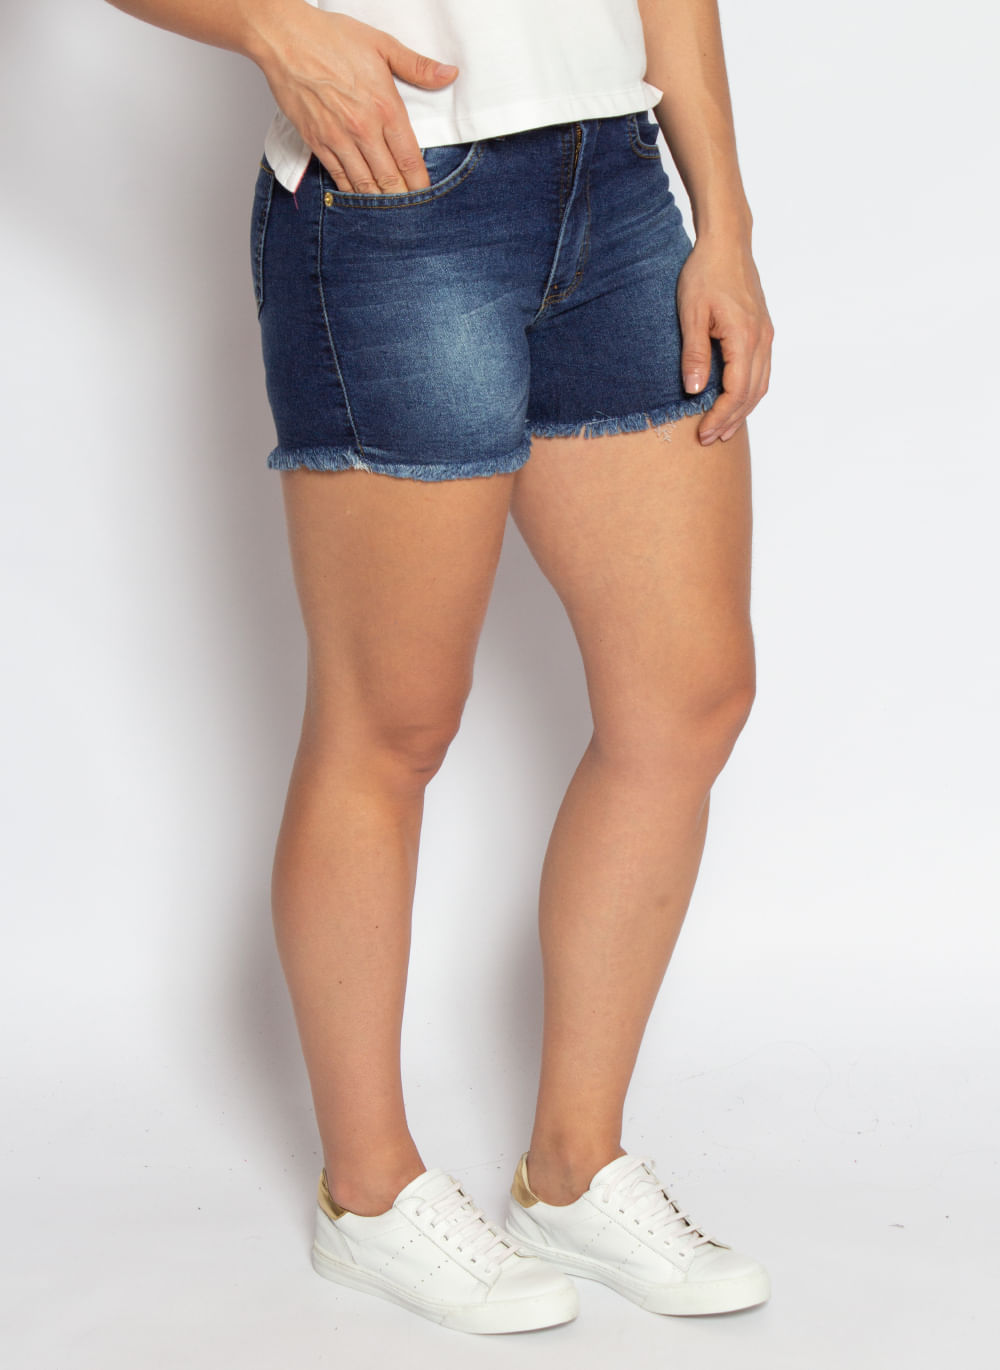 shorts-jeans-feminino-aleatory-power-modelo-2021-2-